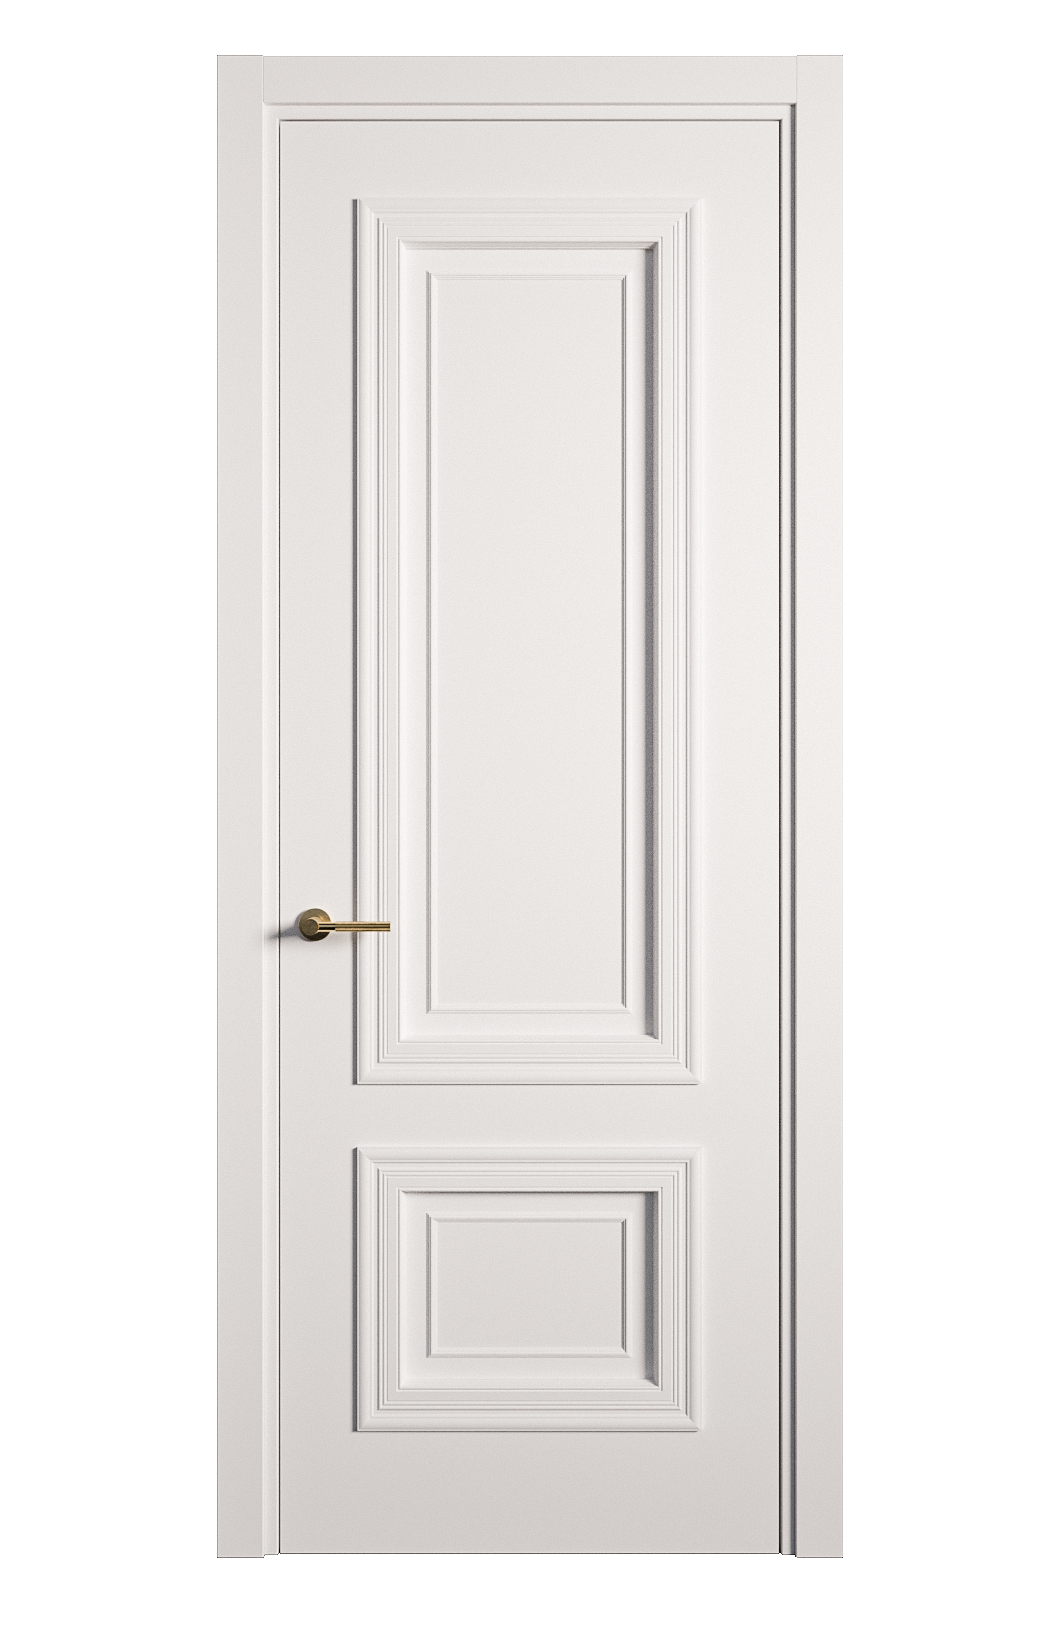 Межкомнатная дверь Мальта-1 глухая эмаль ral 9003 26960